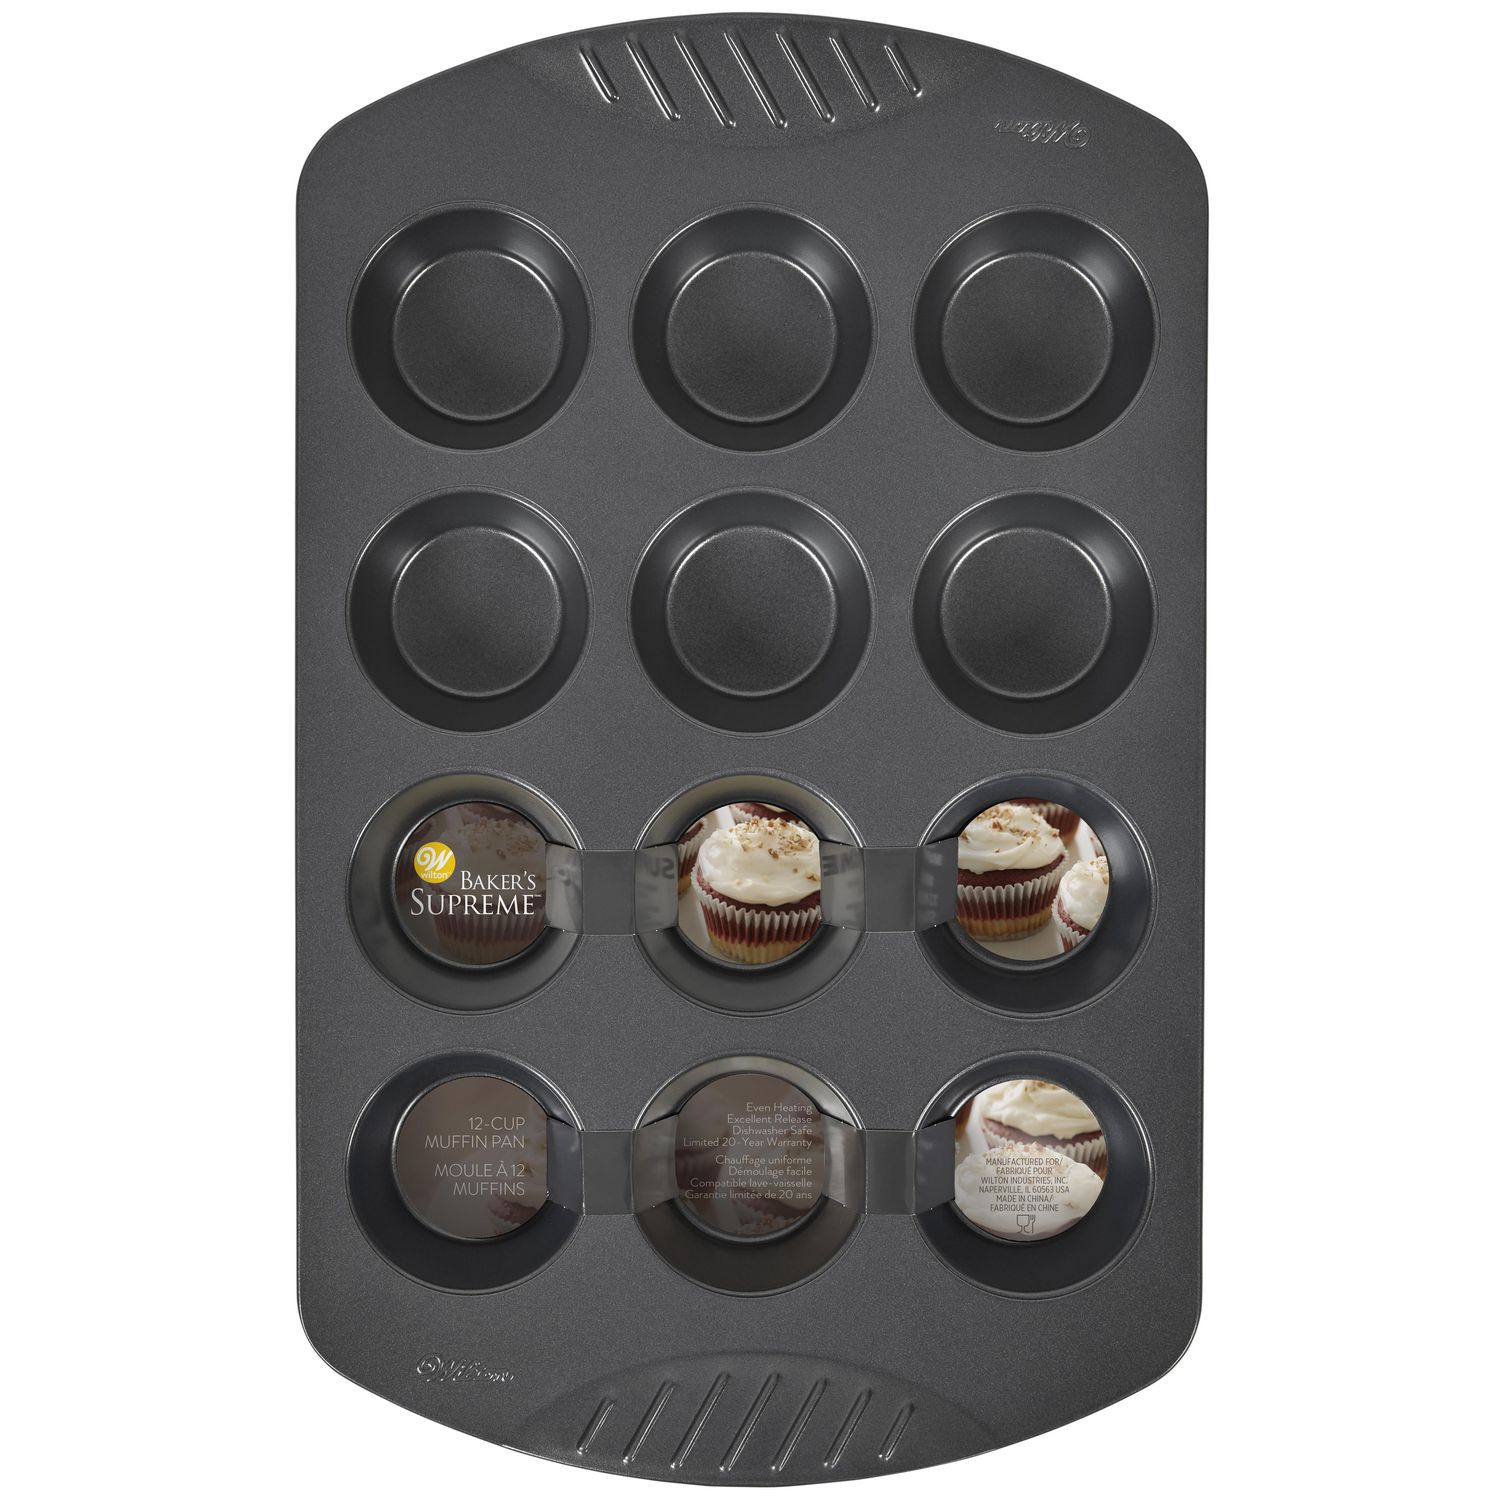 COOCK - Moule à Muffins avec 12 Moules à Cupcakes - Antiadhésif